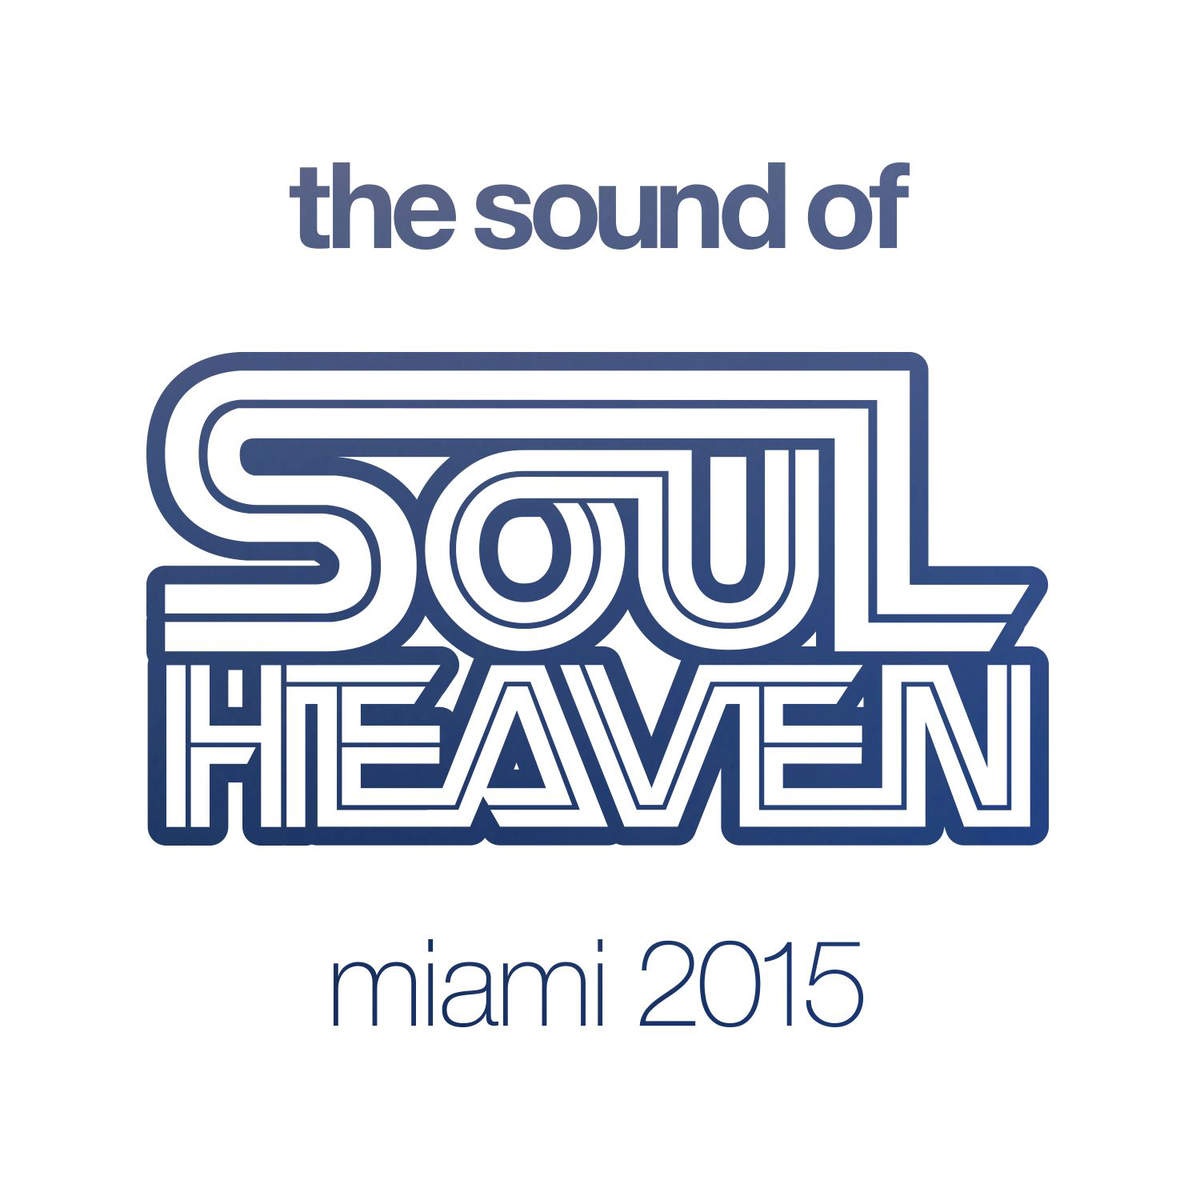 The Sound of Soul Heaven Miami 2015